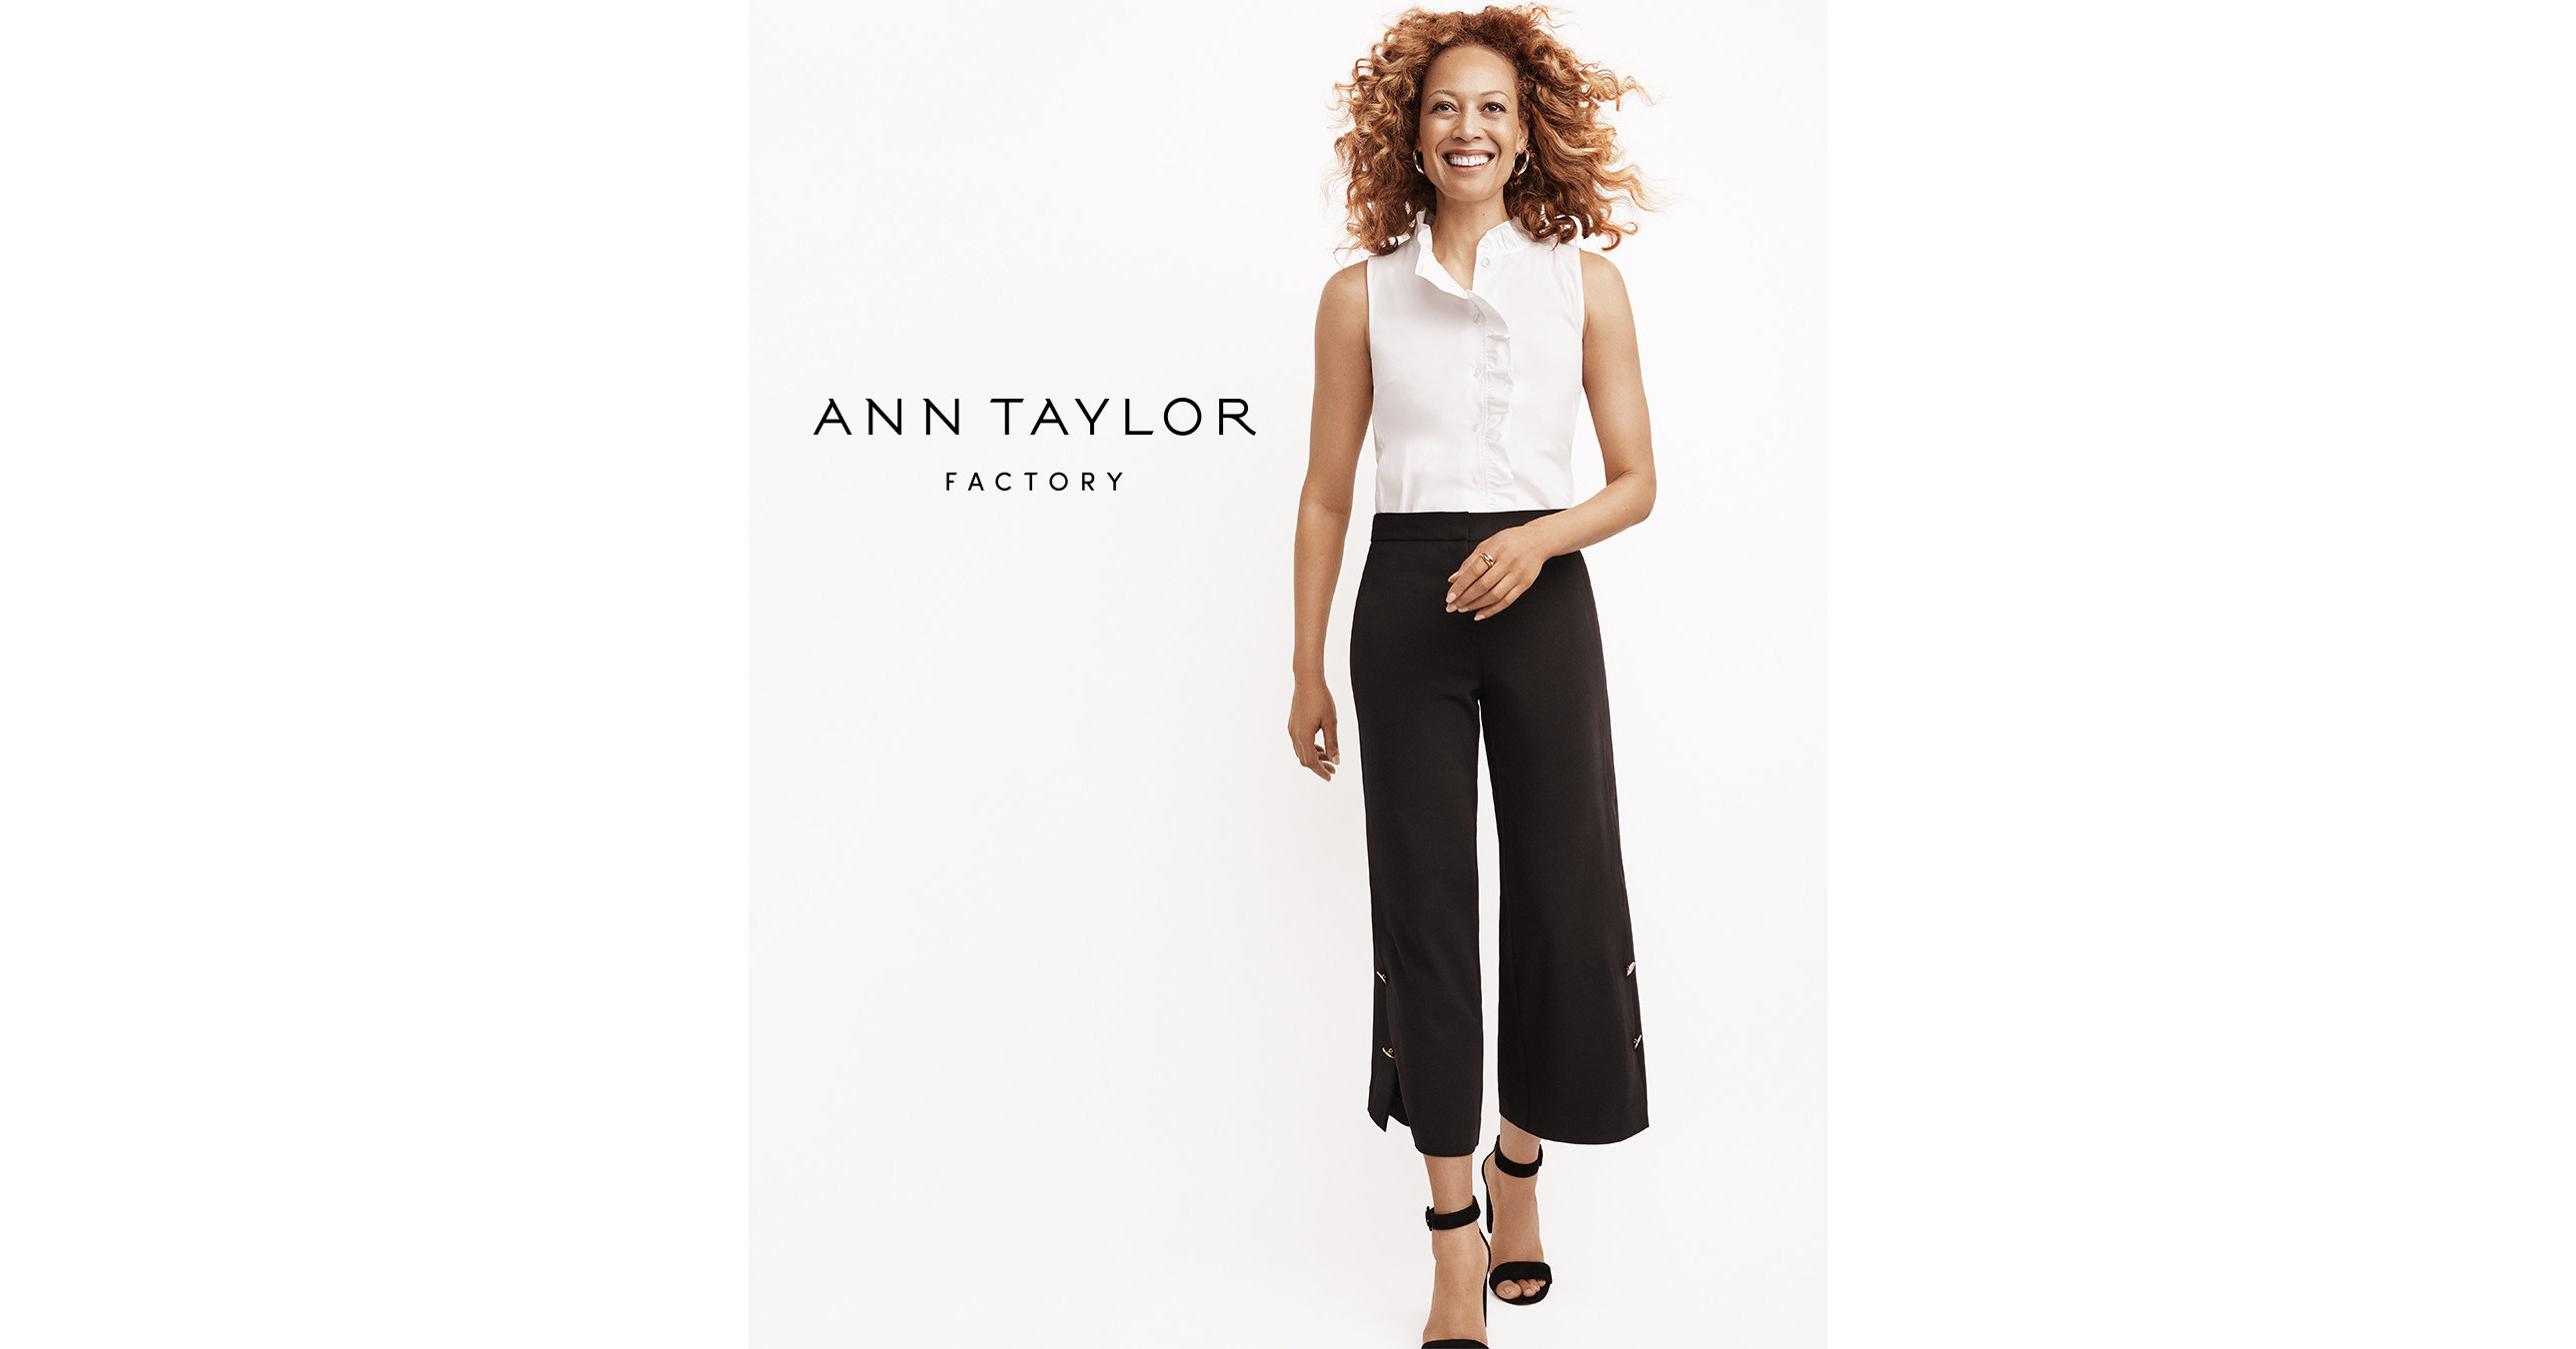 Ann Taylor Loft Outlet, Retail Construction